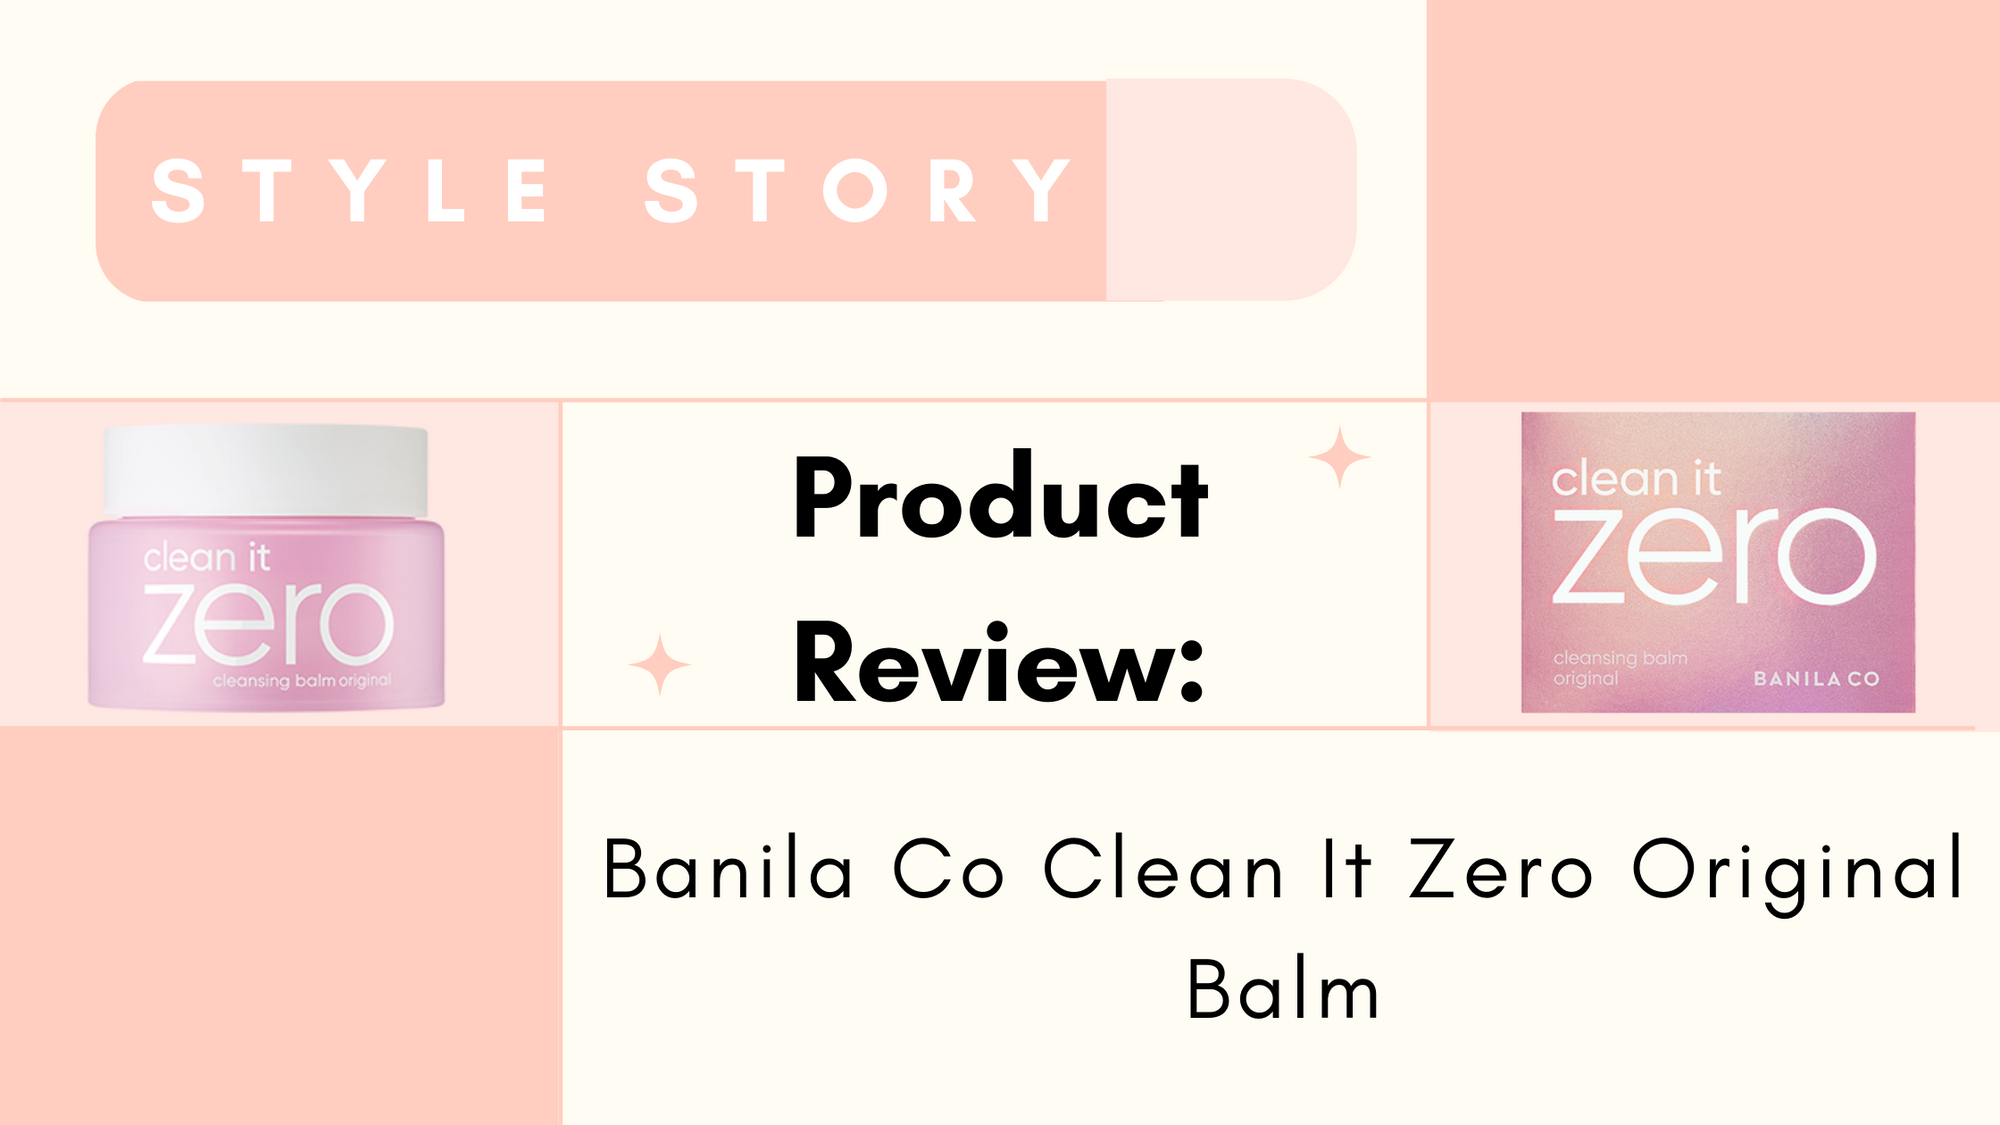 Banila Co Clean It Zero Original Balm Review